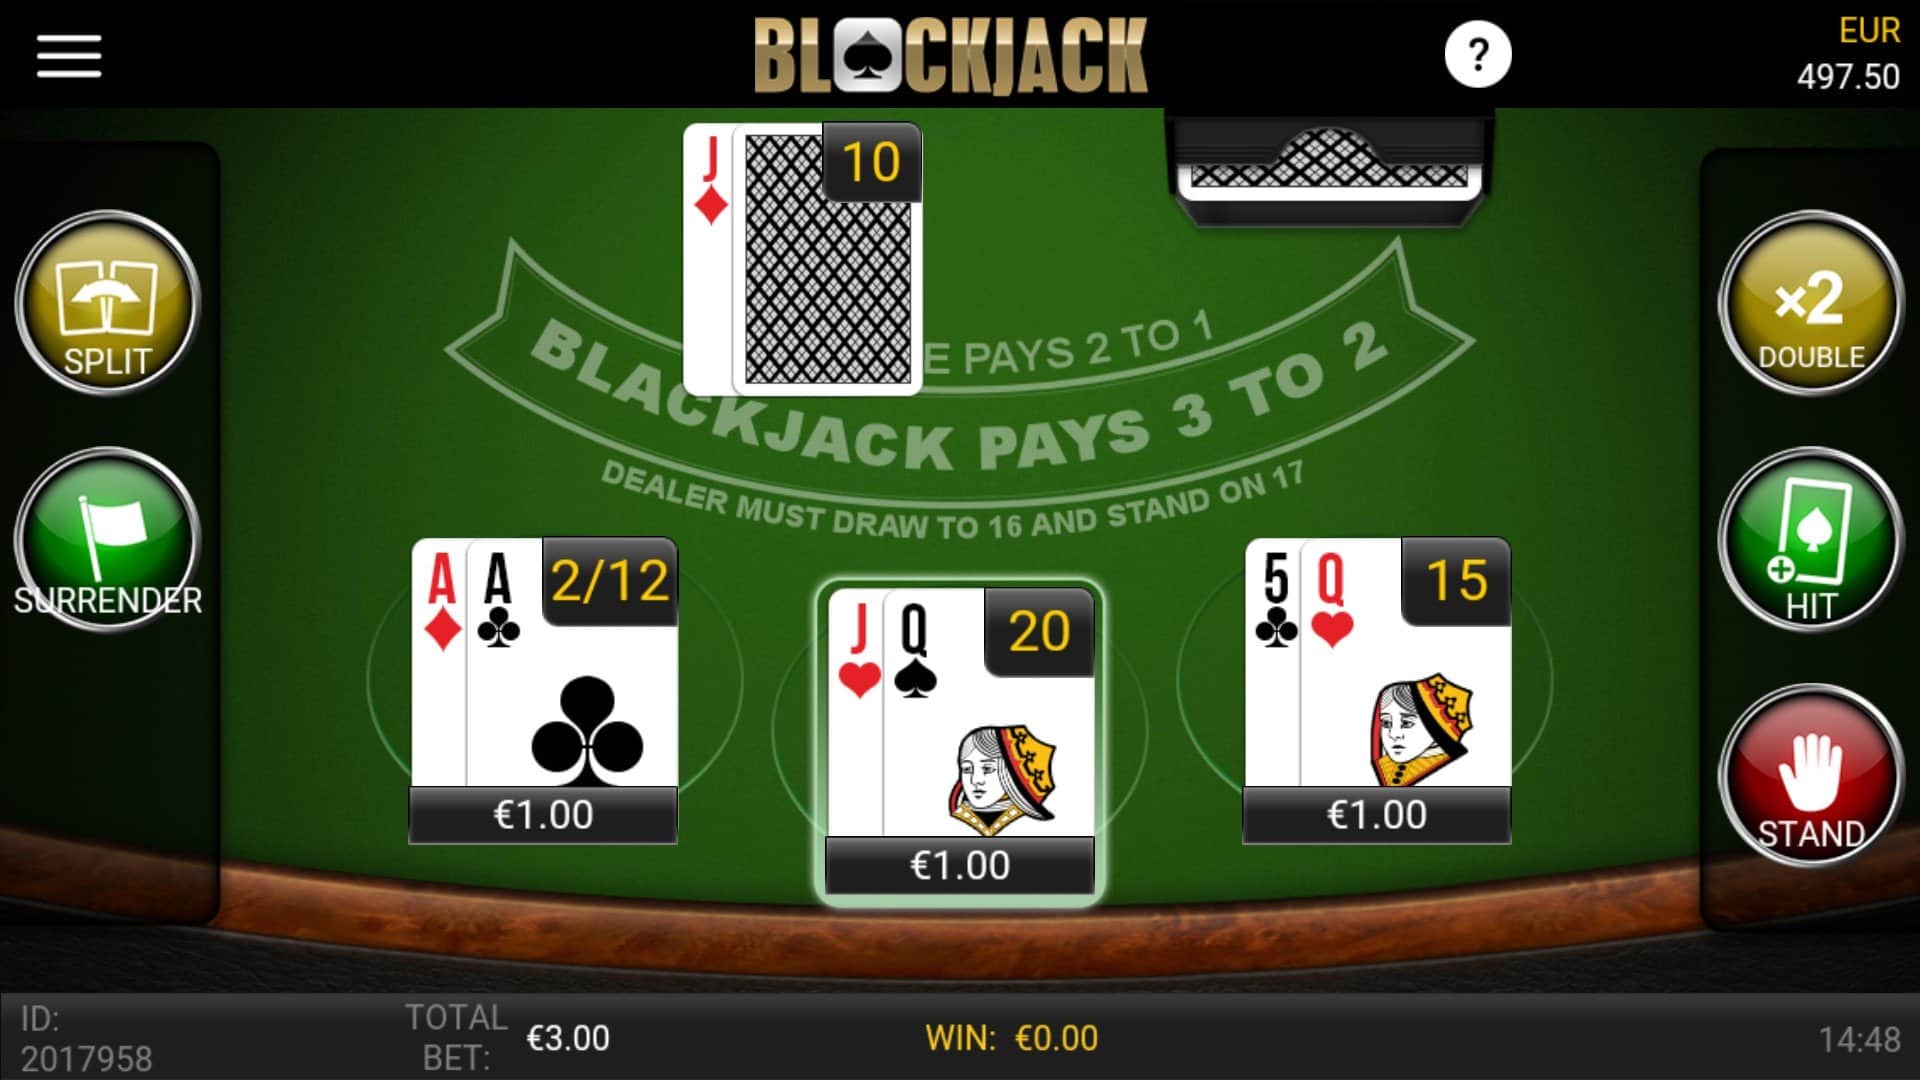 melhores jogos de blackjack online